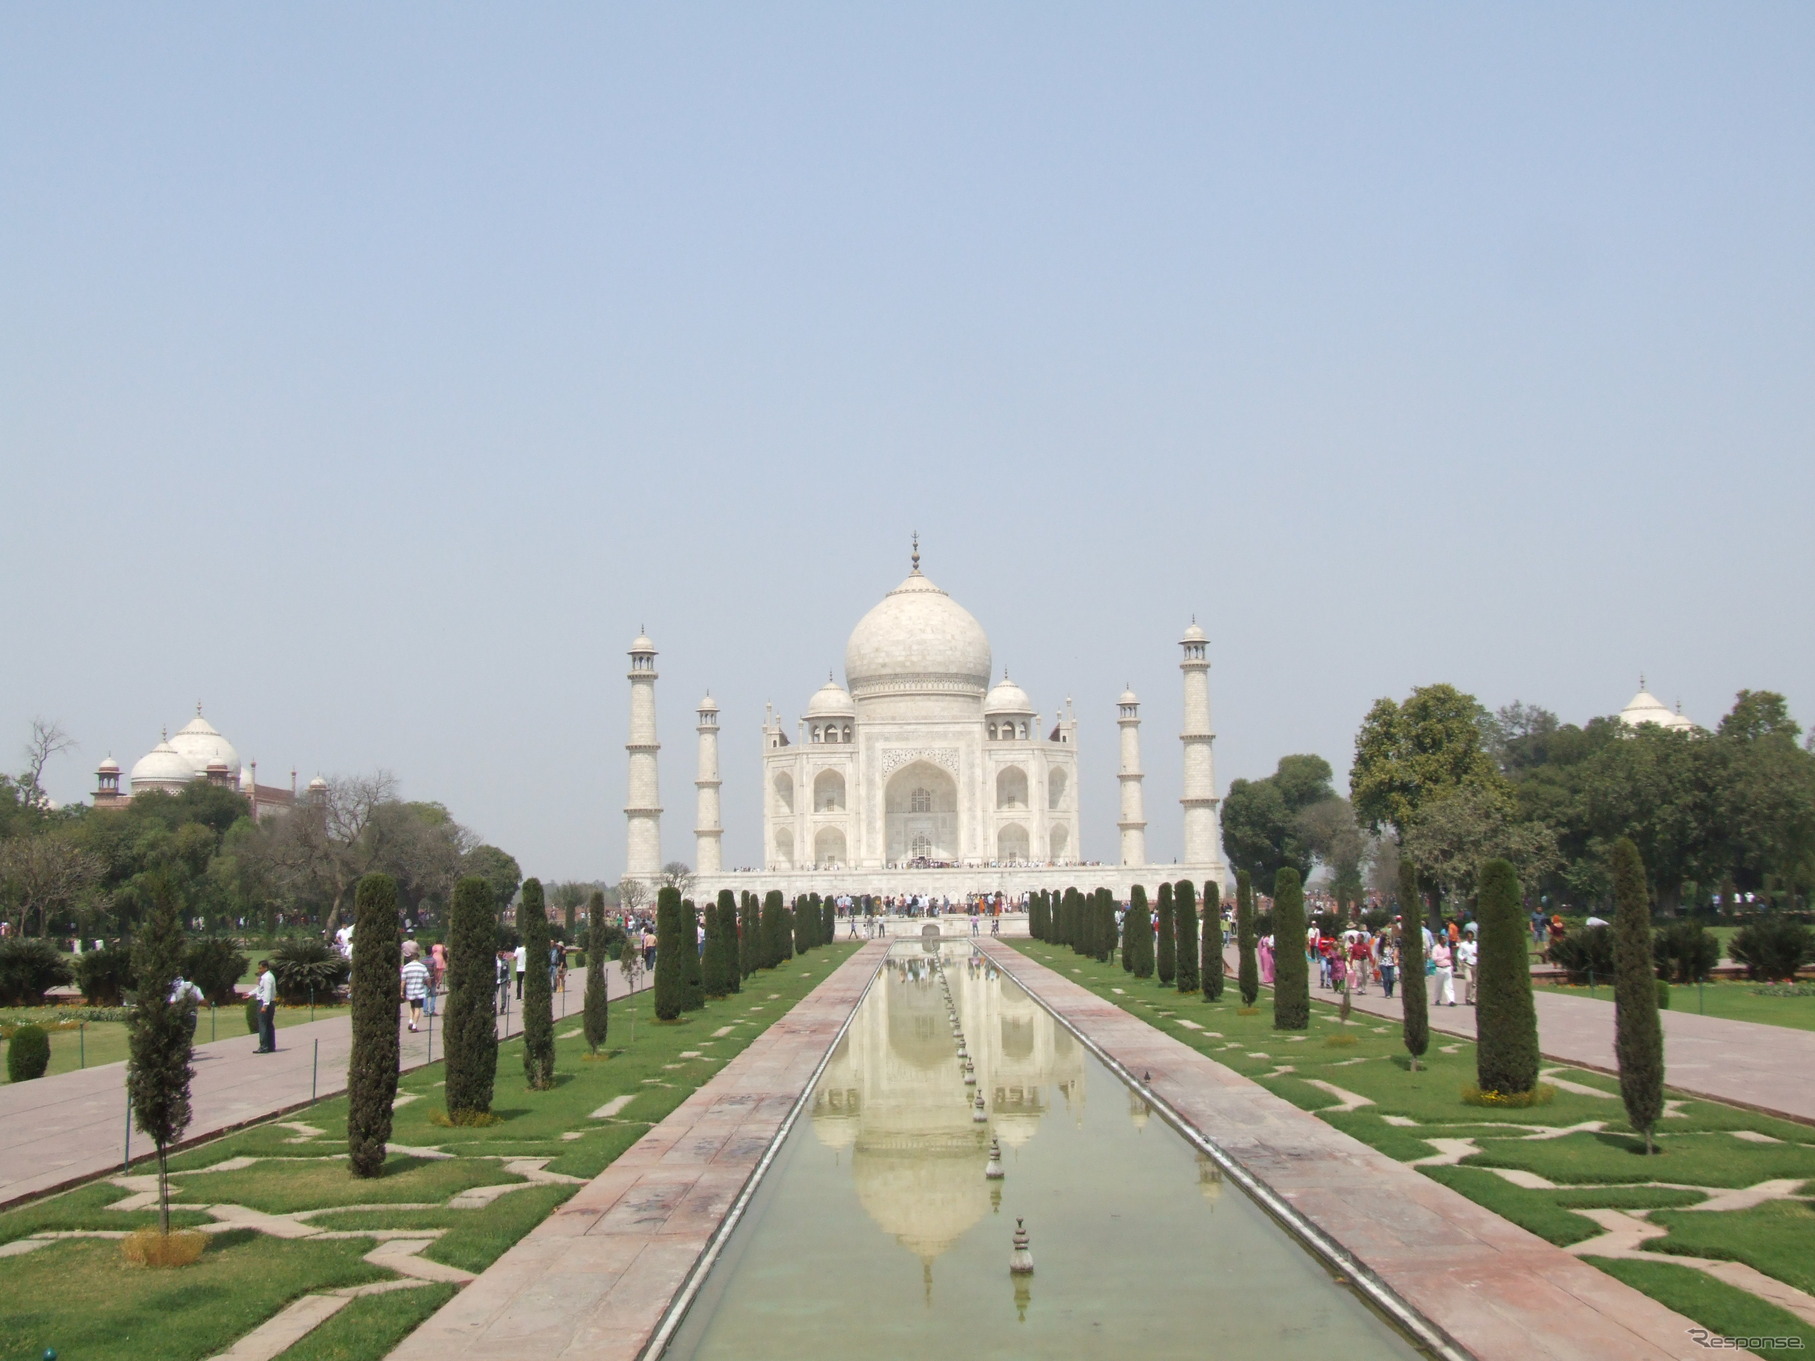 インド、アジアの手頃な観光地ベスト10に4か所が選出